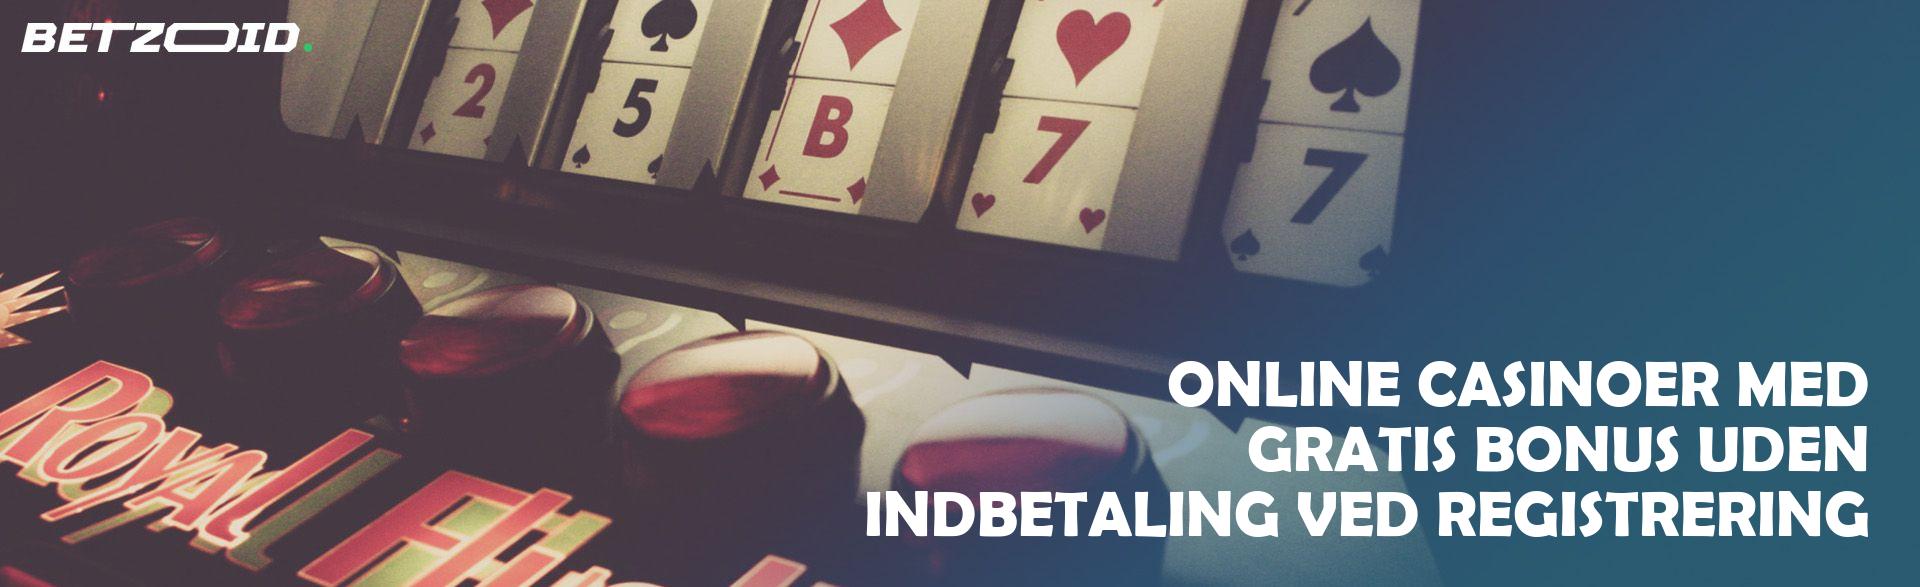 Online Casinoer med Gratis Bonus uden Indbetaling Ved Registrering.